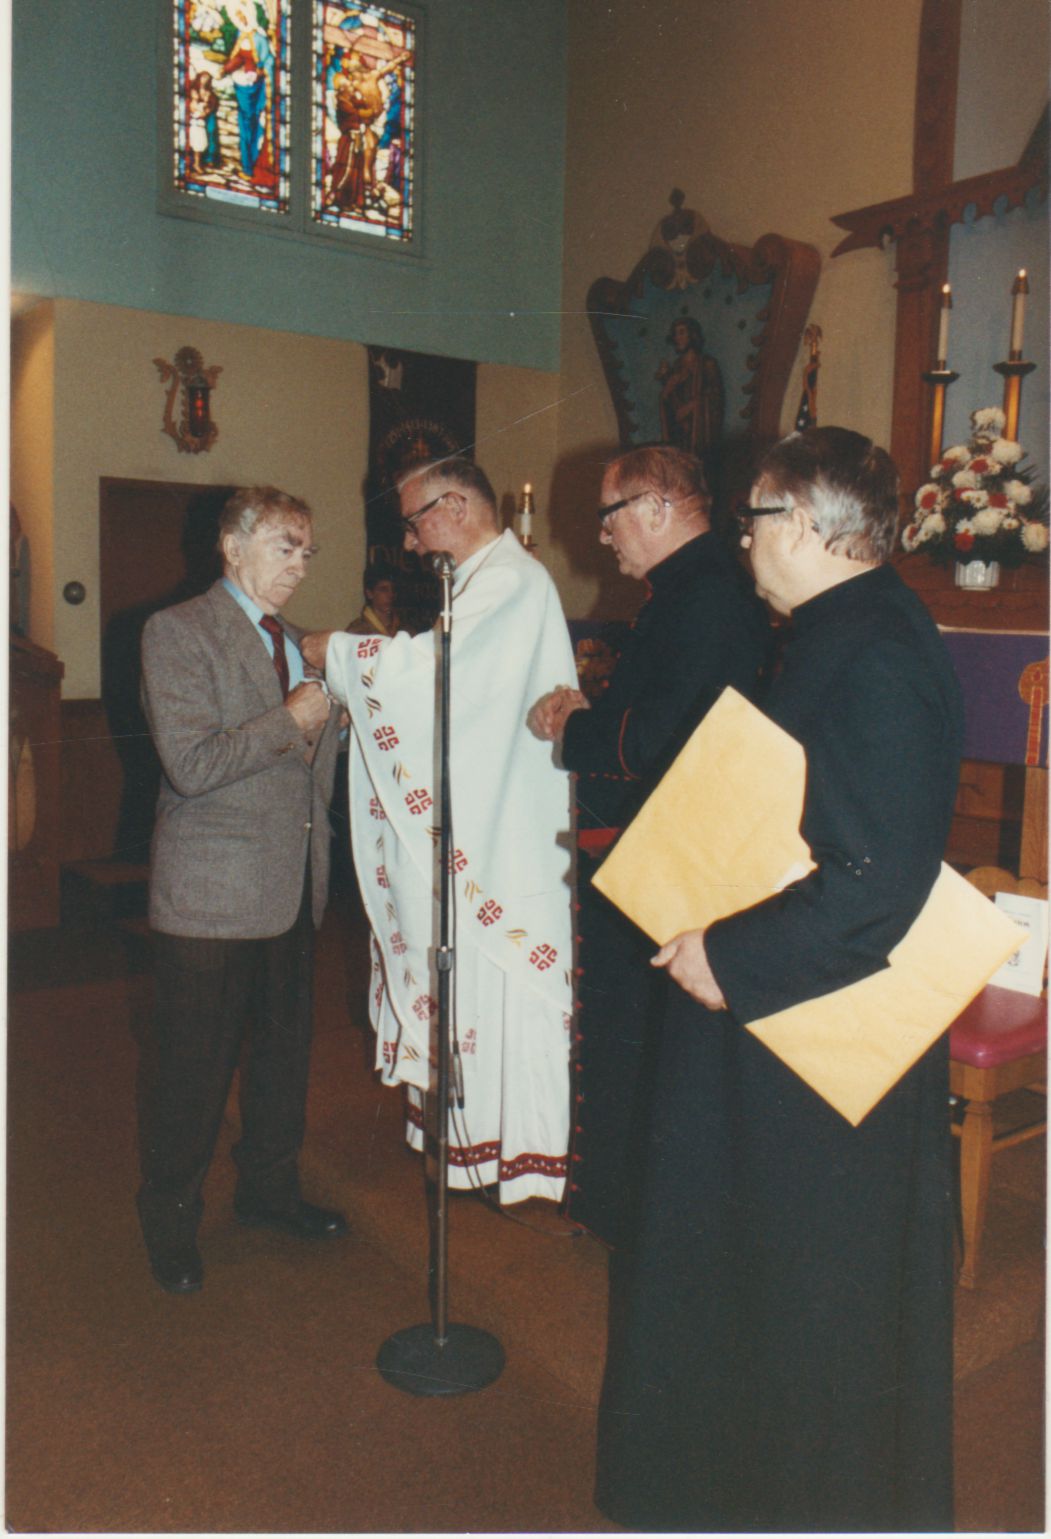 Popiežiaus Jono Pauliaus II apdovanojimo įteikimas šv. Kazimiero parapijos bažnyčioje Los Andžele 1988 m. kovo 6 d. Medalį B. Brazdžioniui sega prelatas Jonas Kučingis